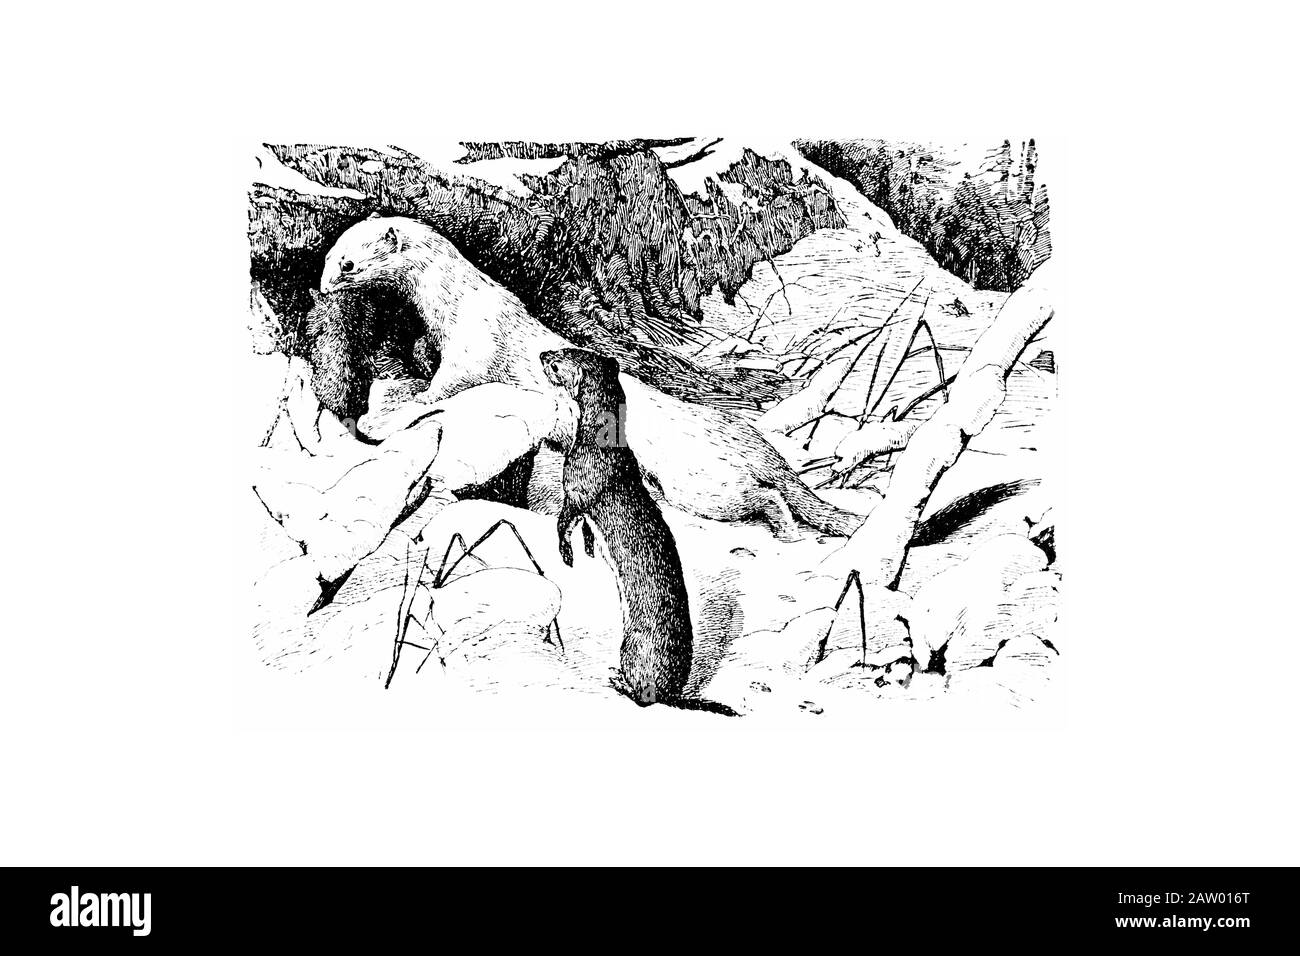 Weasel und Ermine - Gravierte Abbildung von Vettage, Vj Stockfoto